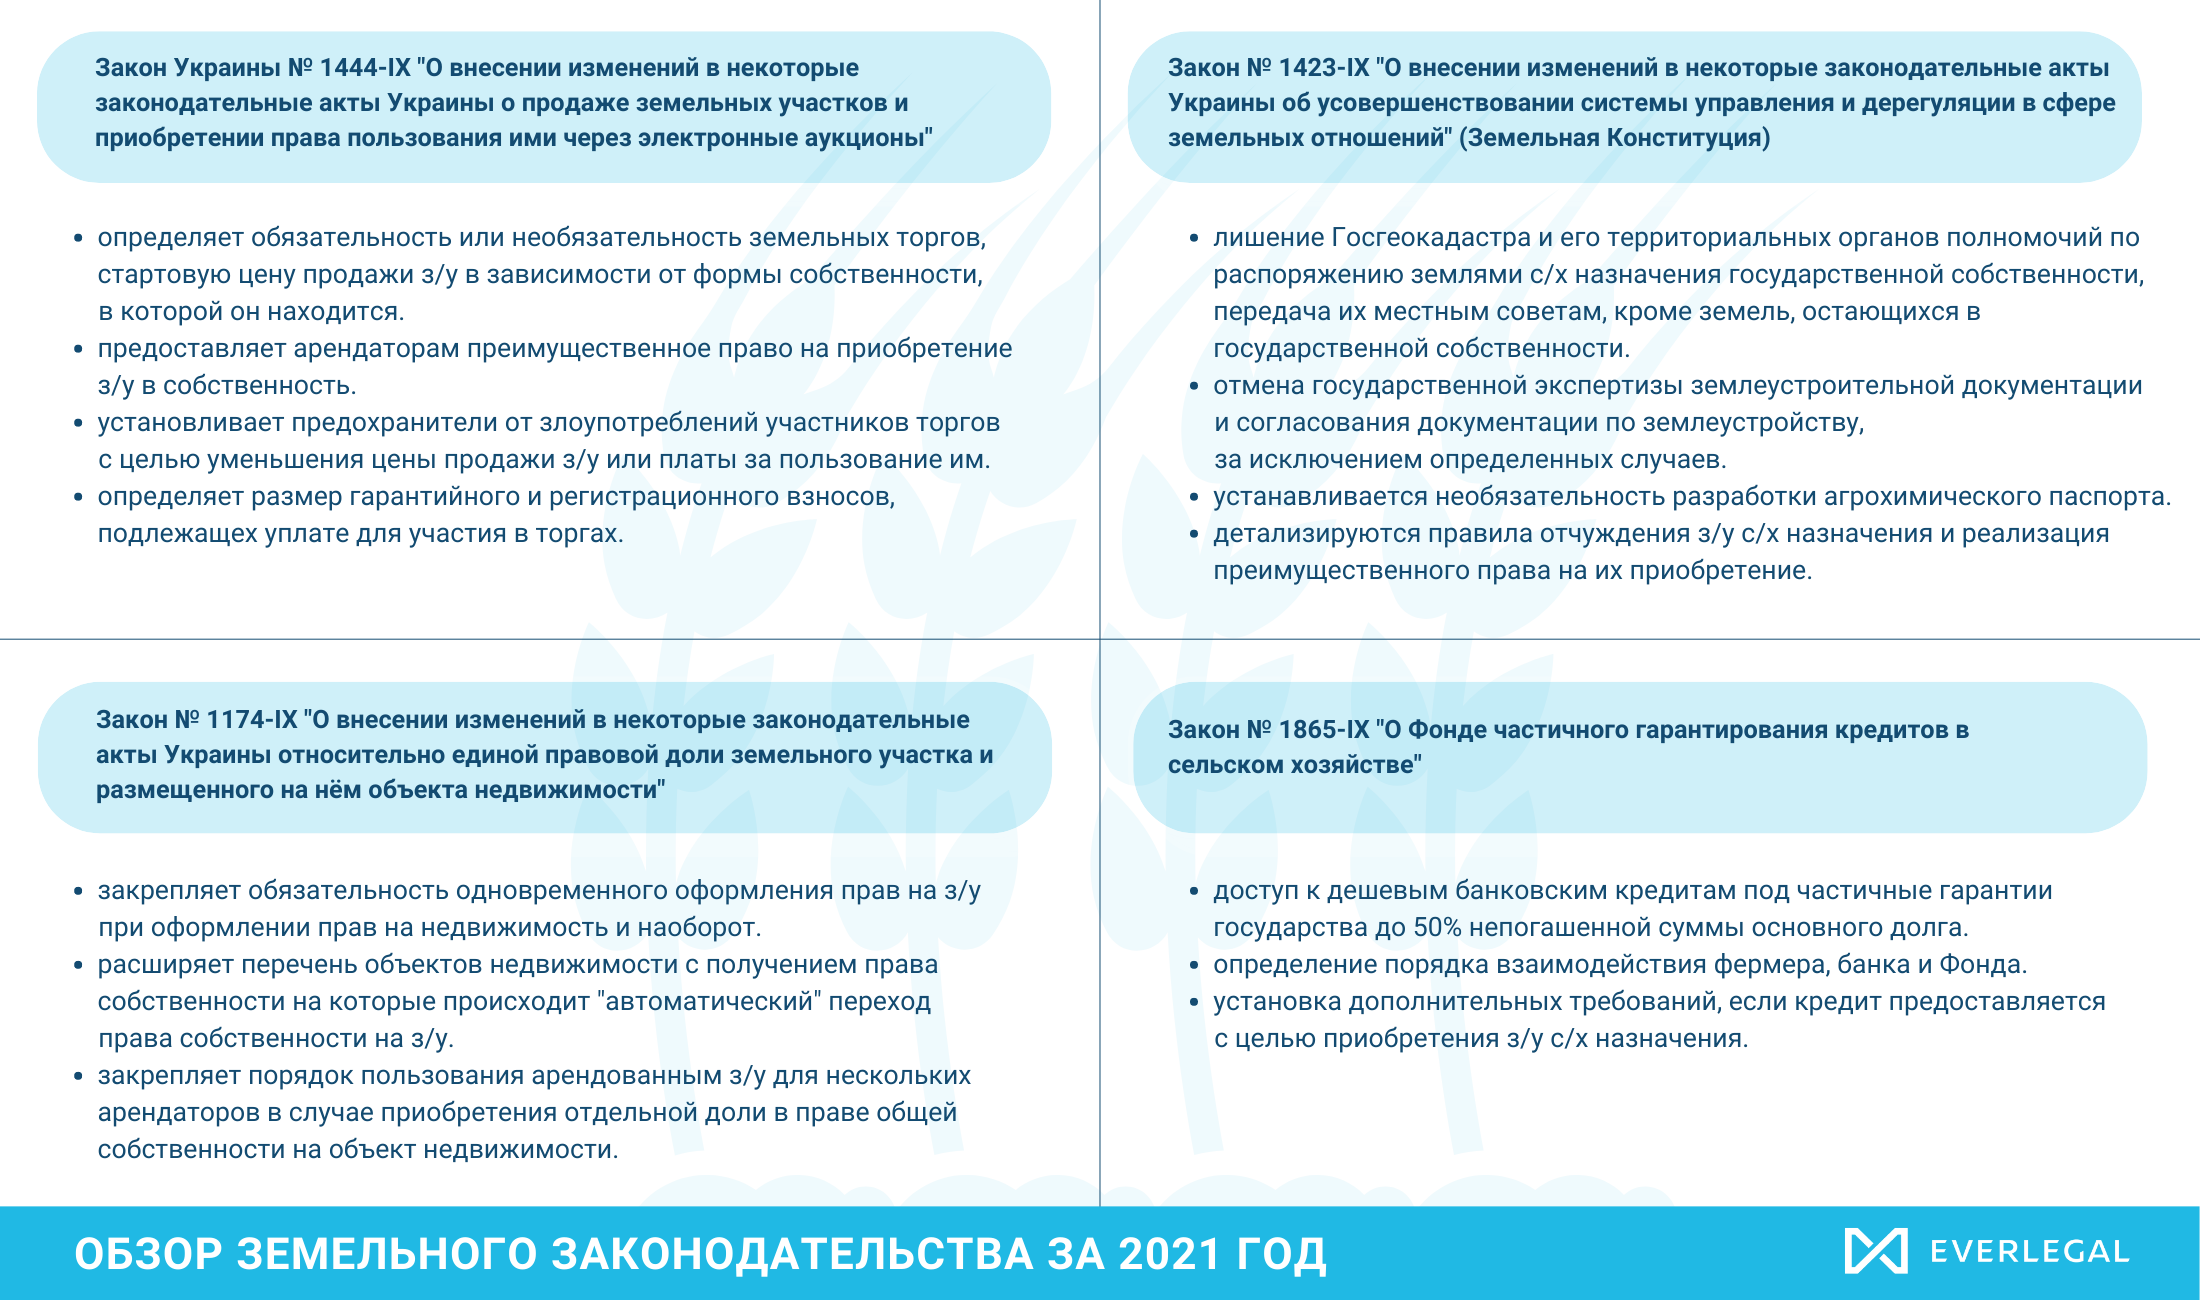 Главные изменения в земельном законодательстве Украины в 2021 году 